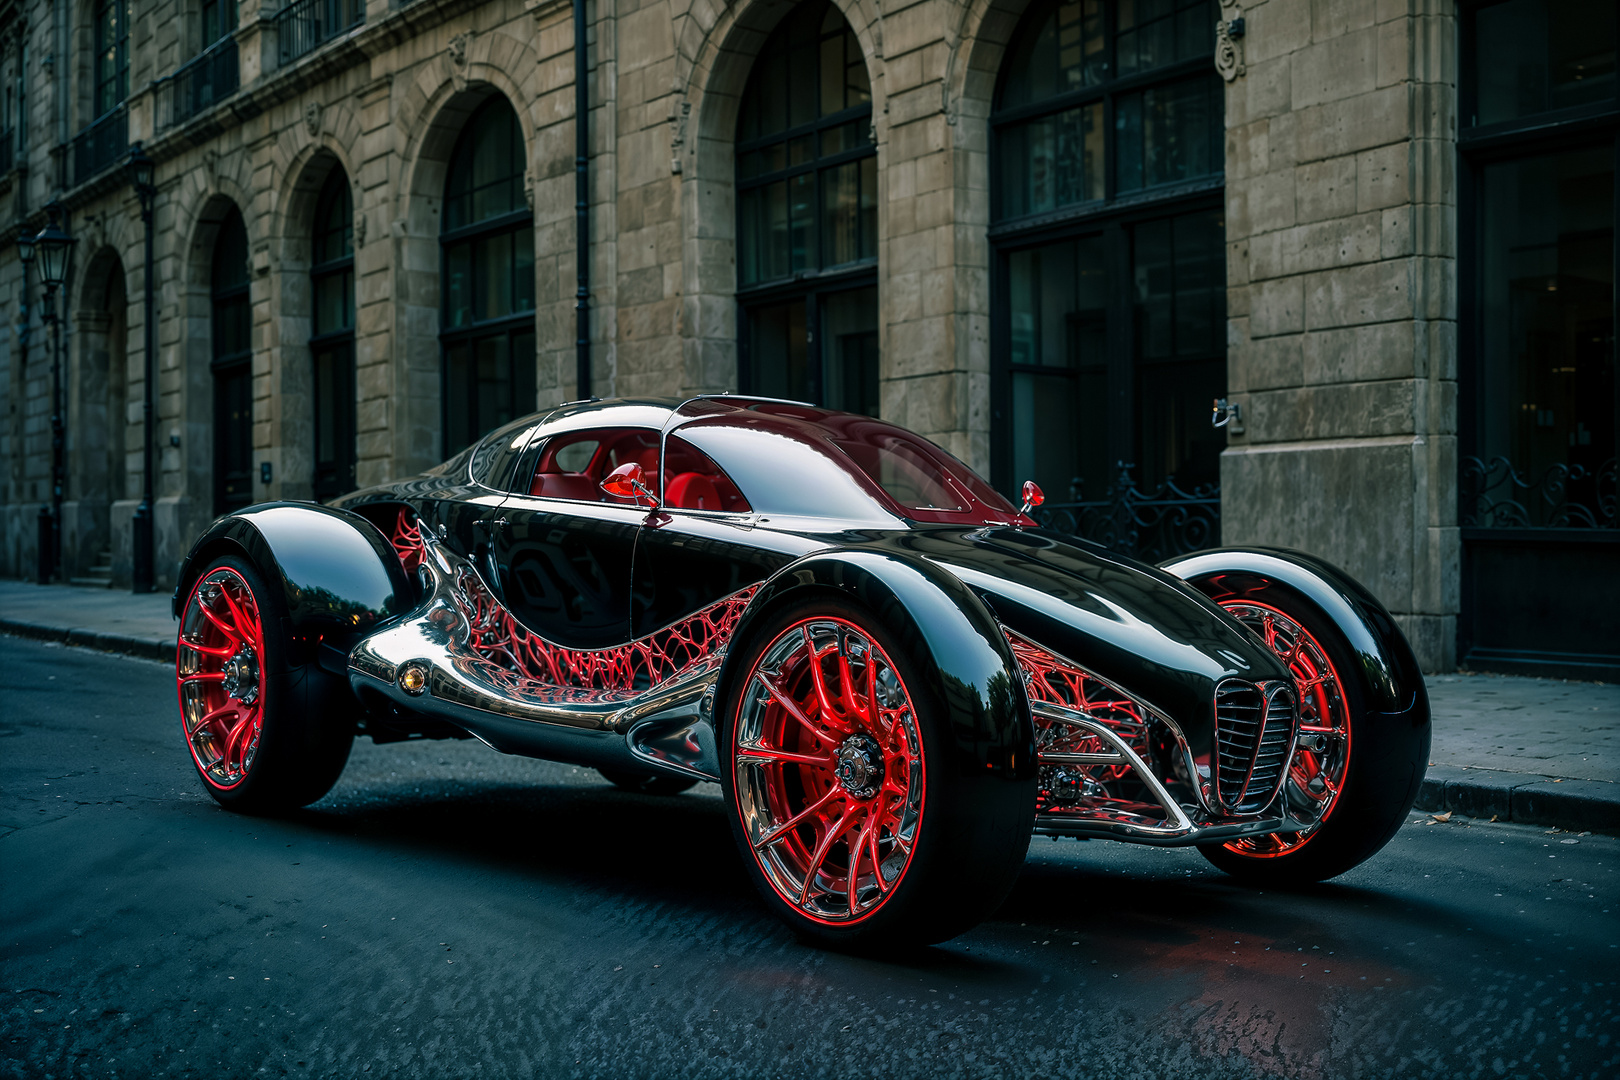 Das Auto von Spiderman